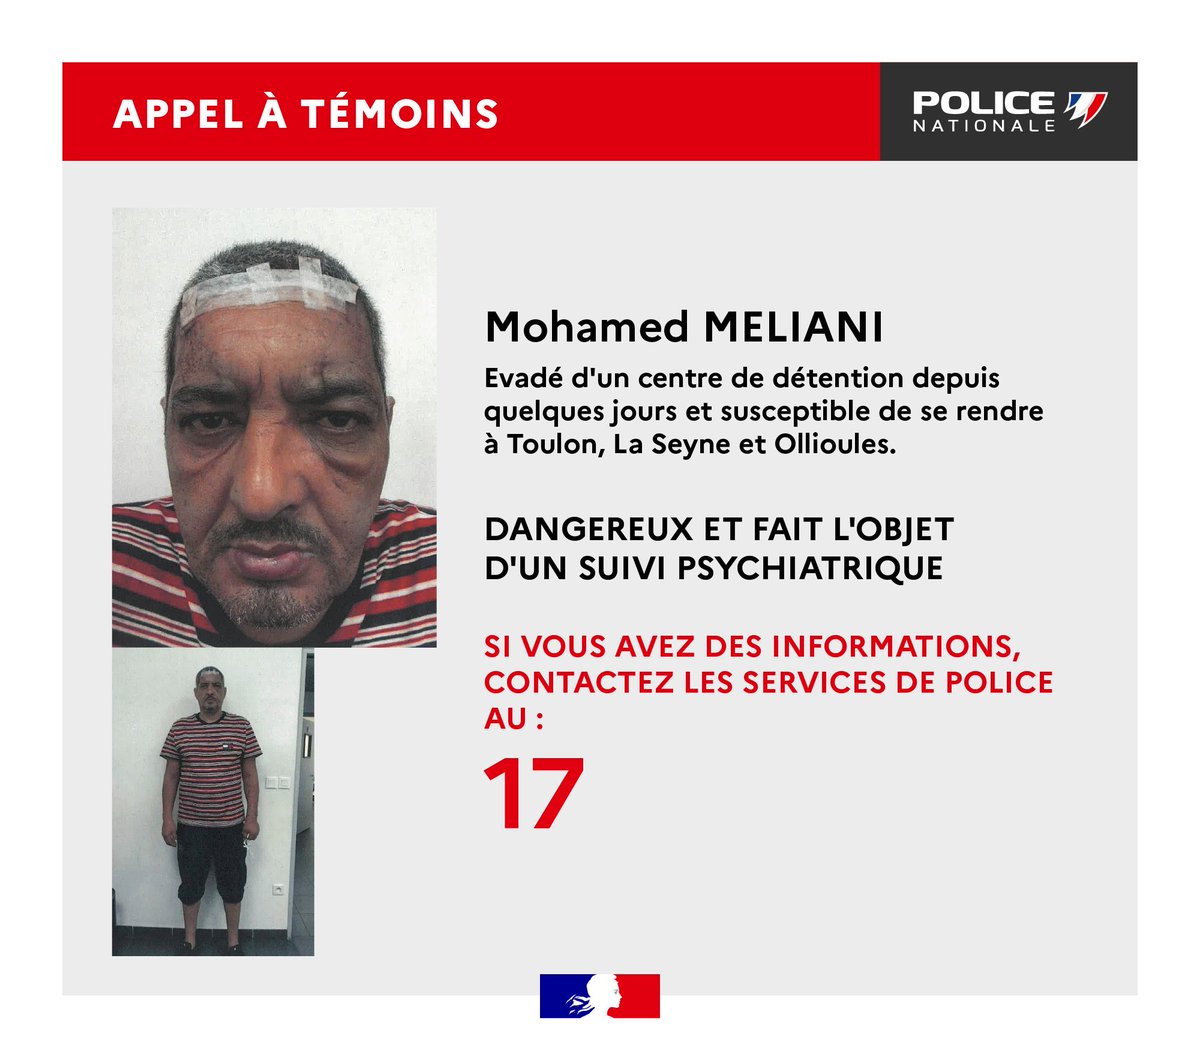 🔴 #APPELÀTÉMOINS - Mohamed MELIANI évadé d’un centre de détention depuis quelques jours et susceptible de se rendre à #Toulon, #LaSeyne et #Ollioules. Homme #dangereux et fait l’objet d’un suivi #psychiatrique.

👉 Des informations ? 1️⃣7️⃣